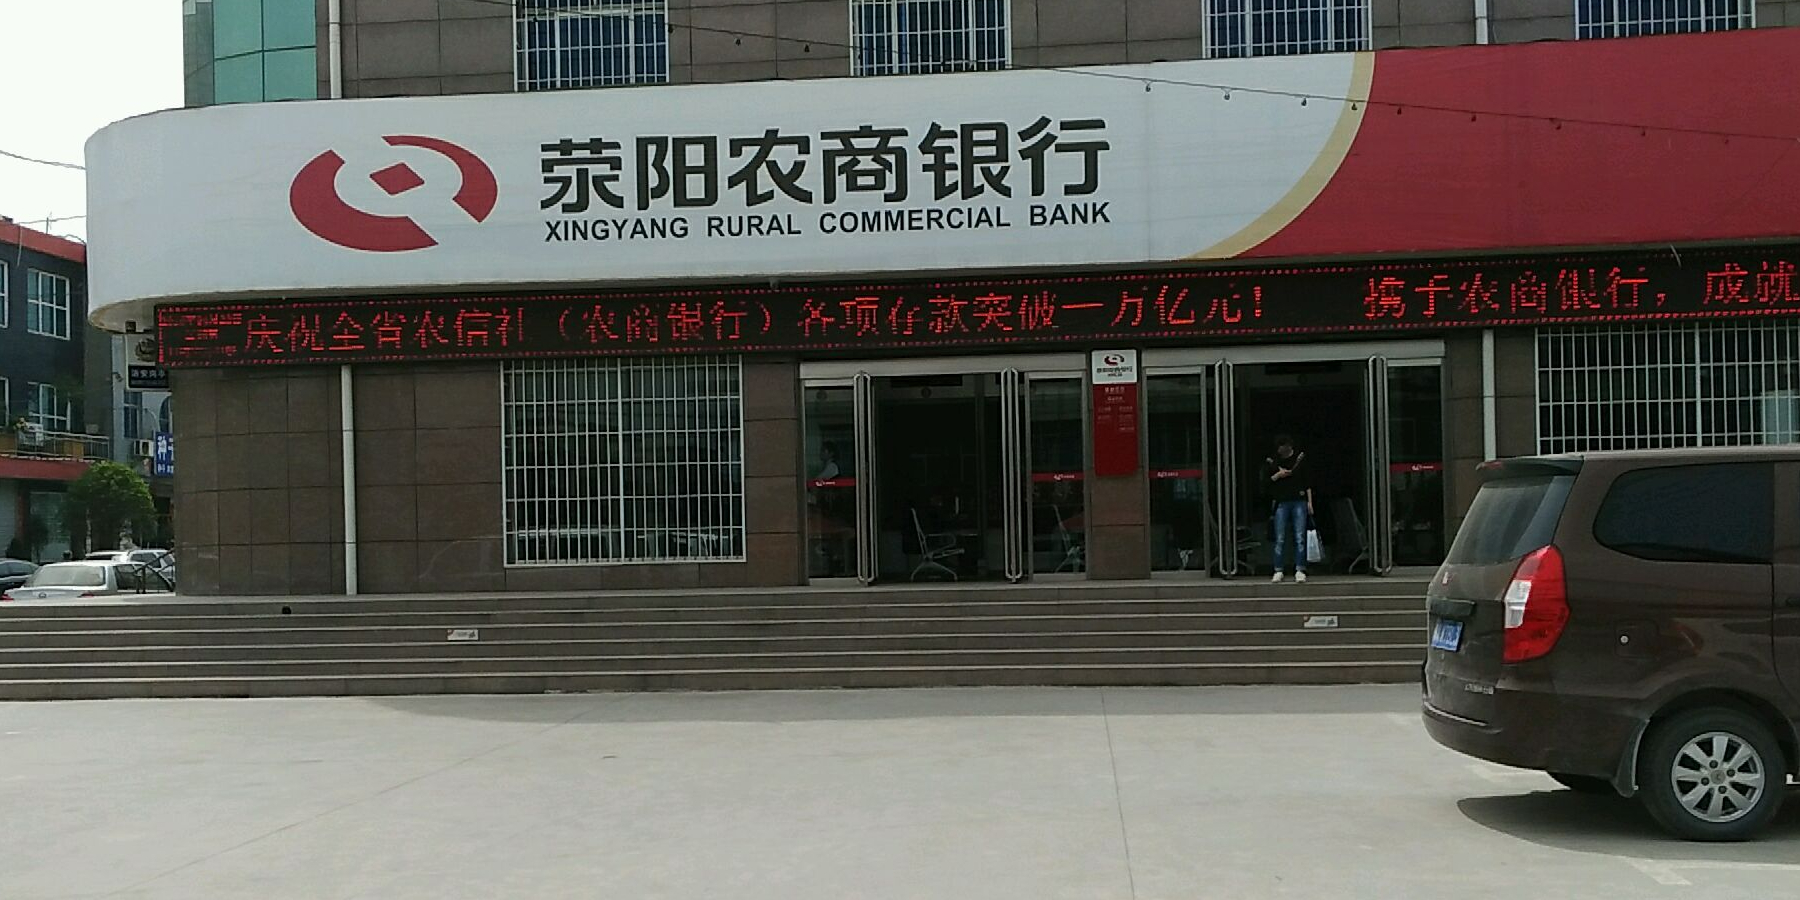 荥阳农商银行(崔庙支行)